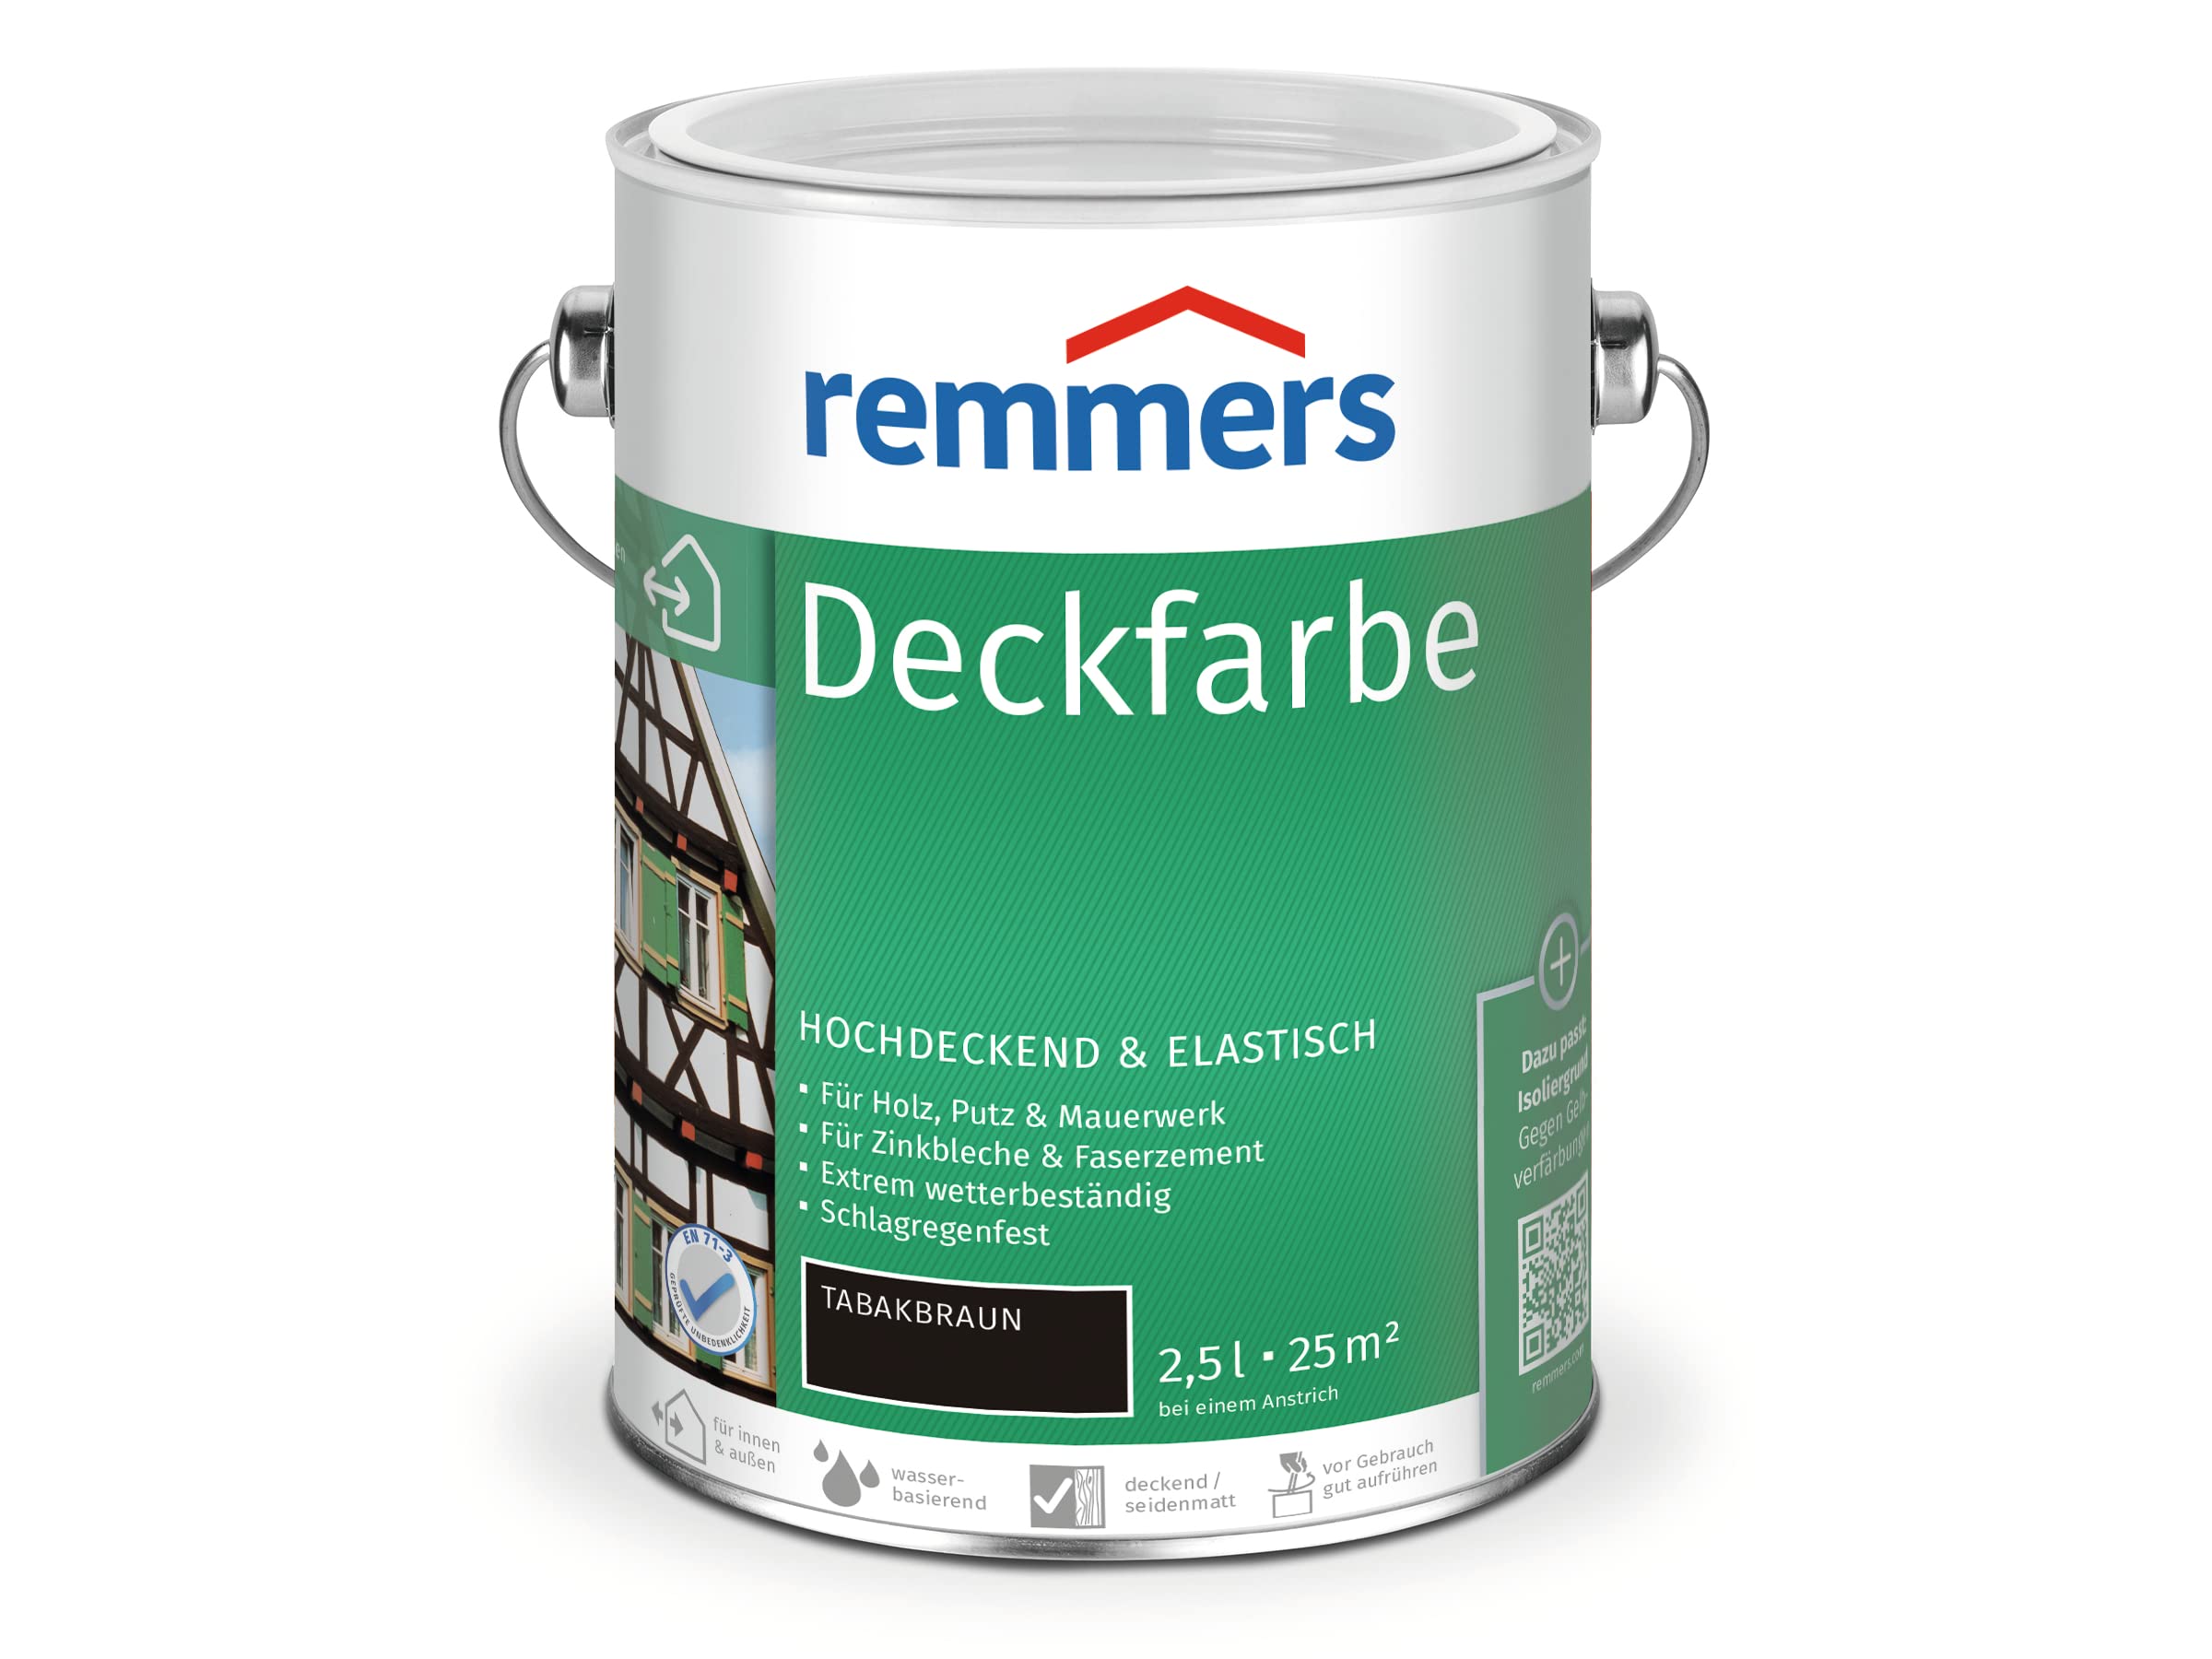 Remmers Deckfarbe - tabakbraun 2,5L